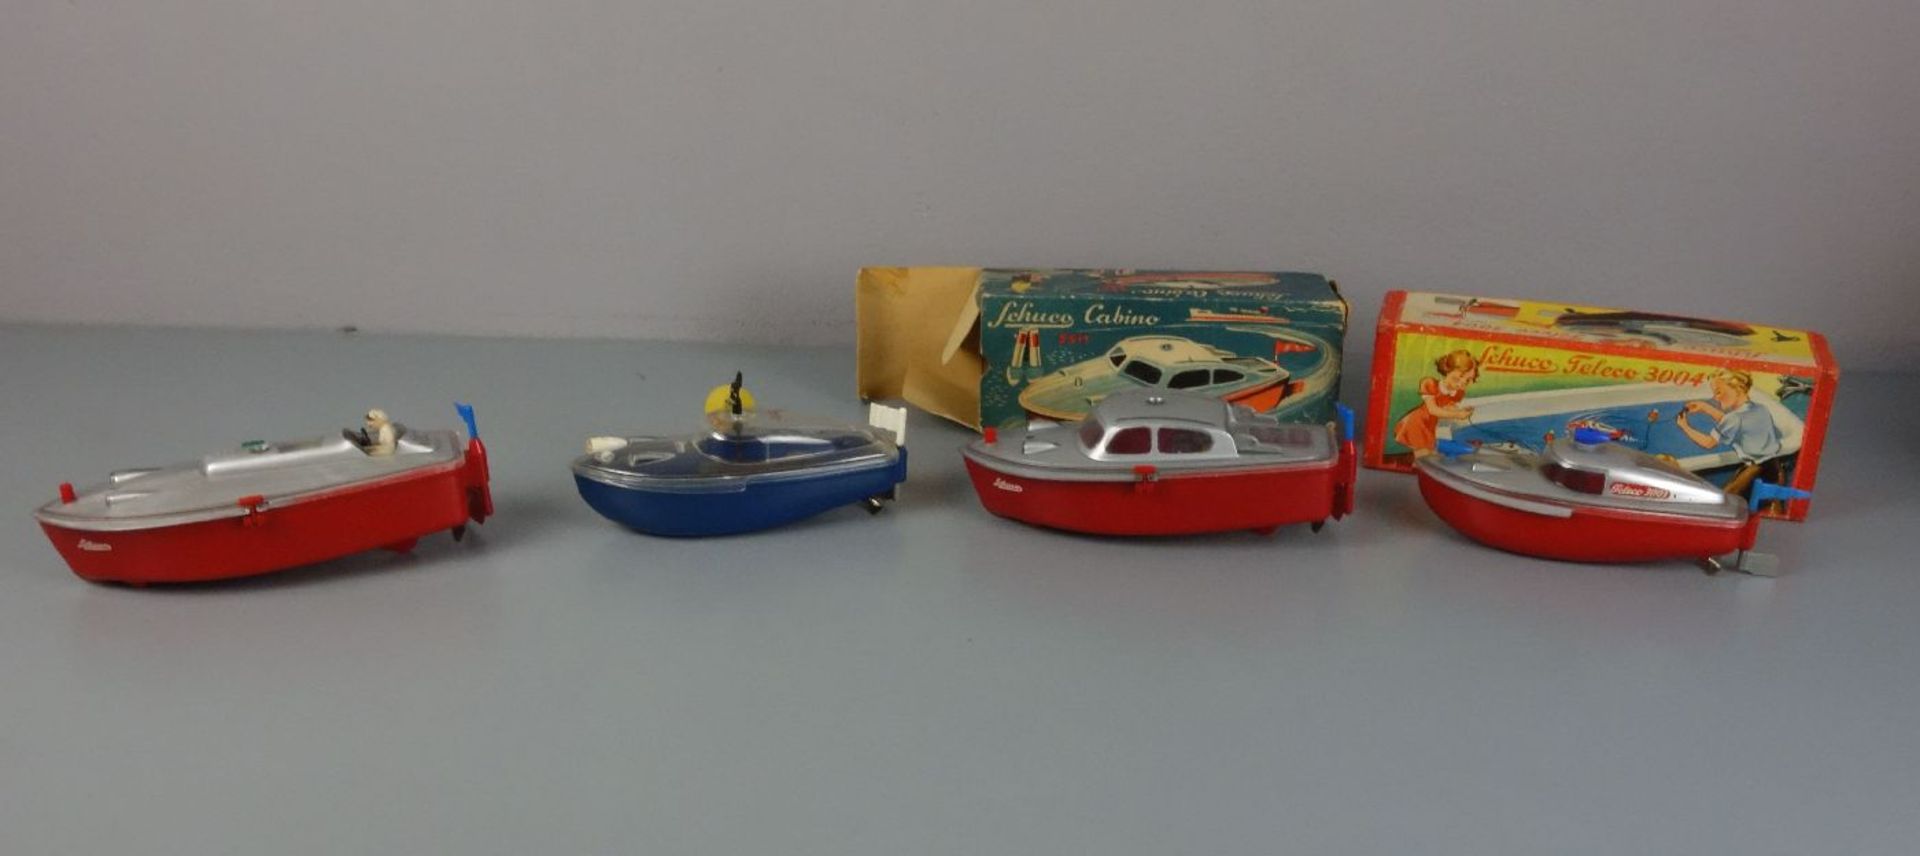 KONVOLUT VON 4 BLECHSPIELZEUG BOOTEN / toy boats, Mitte 20. Jh., lithografiertes Blech und